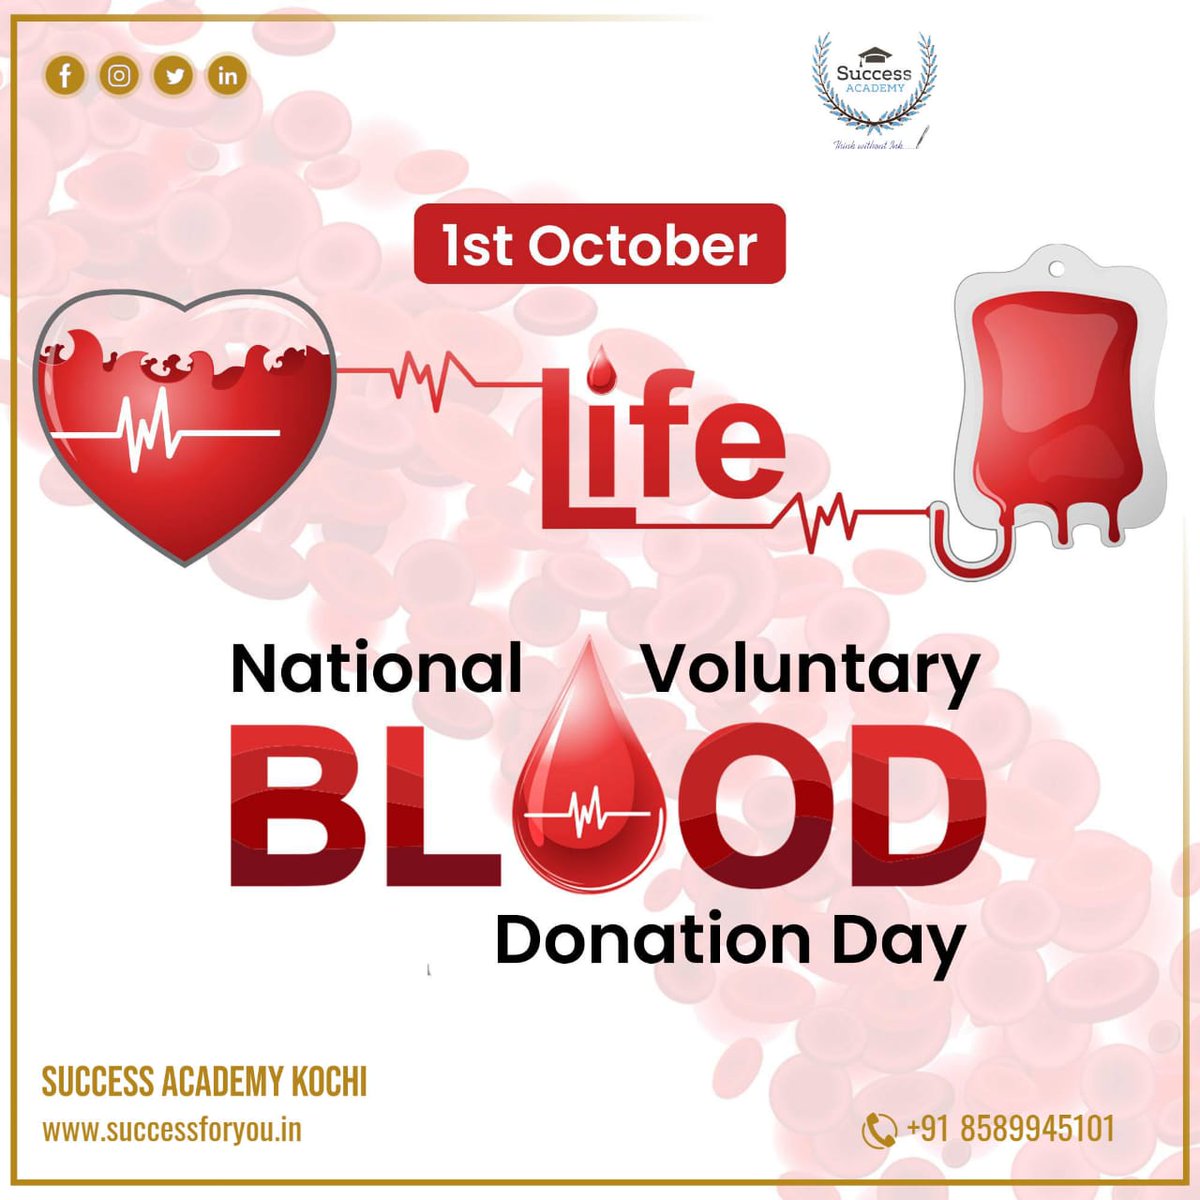 #BloodDonationDay #DonateBlood #VoluntaryBloodDonation #SaveLives #GiveBlood #BloodDonors #DonateLife #BloodHeroes #LifeSaver #BloodDrive #BloodMatters #BeAHero  #BloodDonationCamp #DonateBloodToday #BloodDonationAwareness #BeADonor
#SSCCoaching #BankCoaching #SuccessAcademyKochi